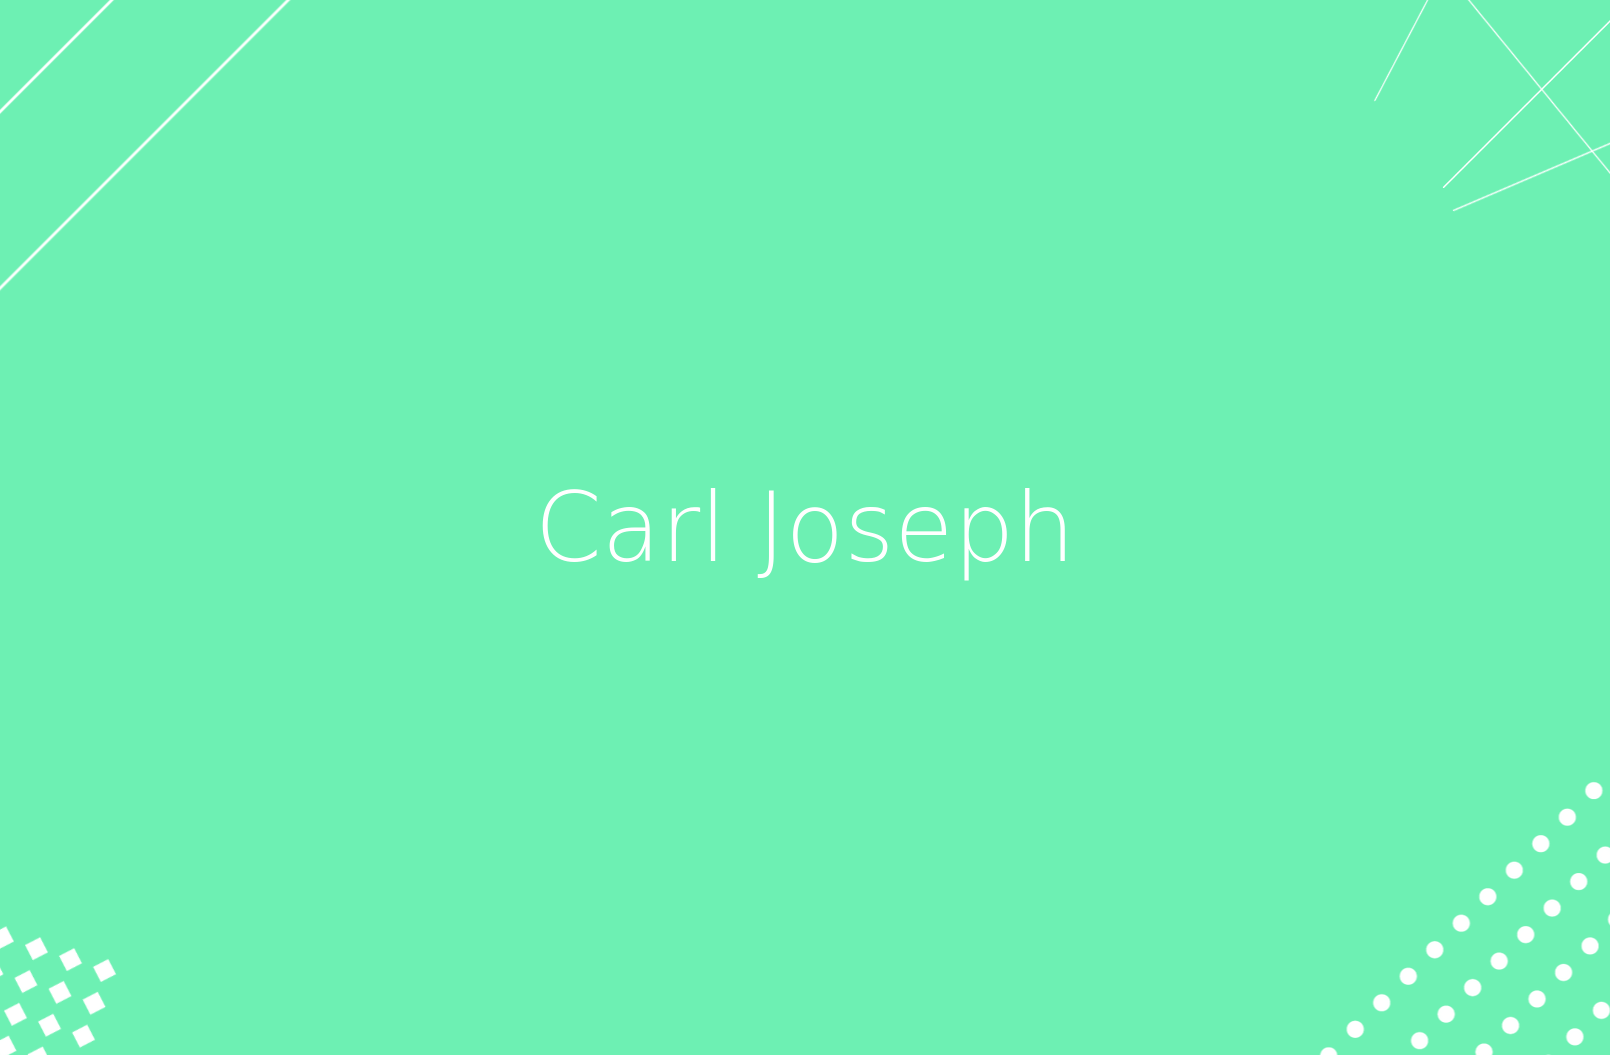 Deportistas con discapacidad: biografía de Carl Joseph